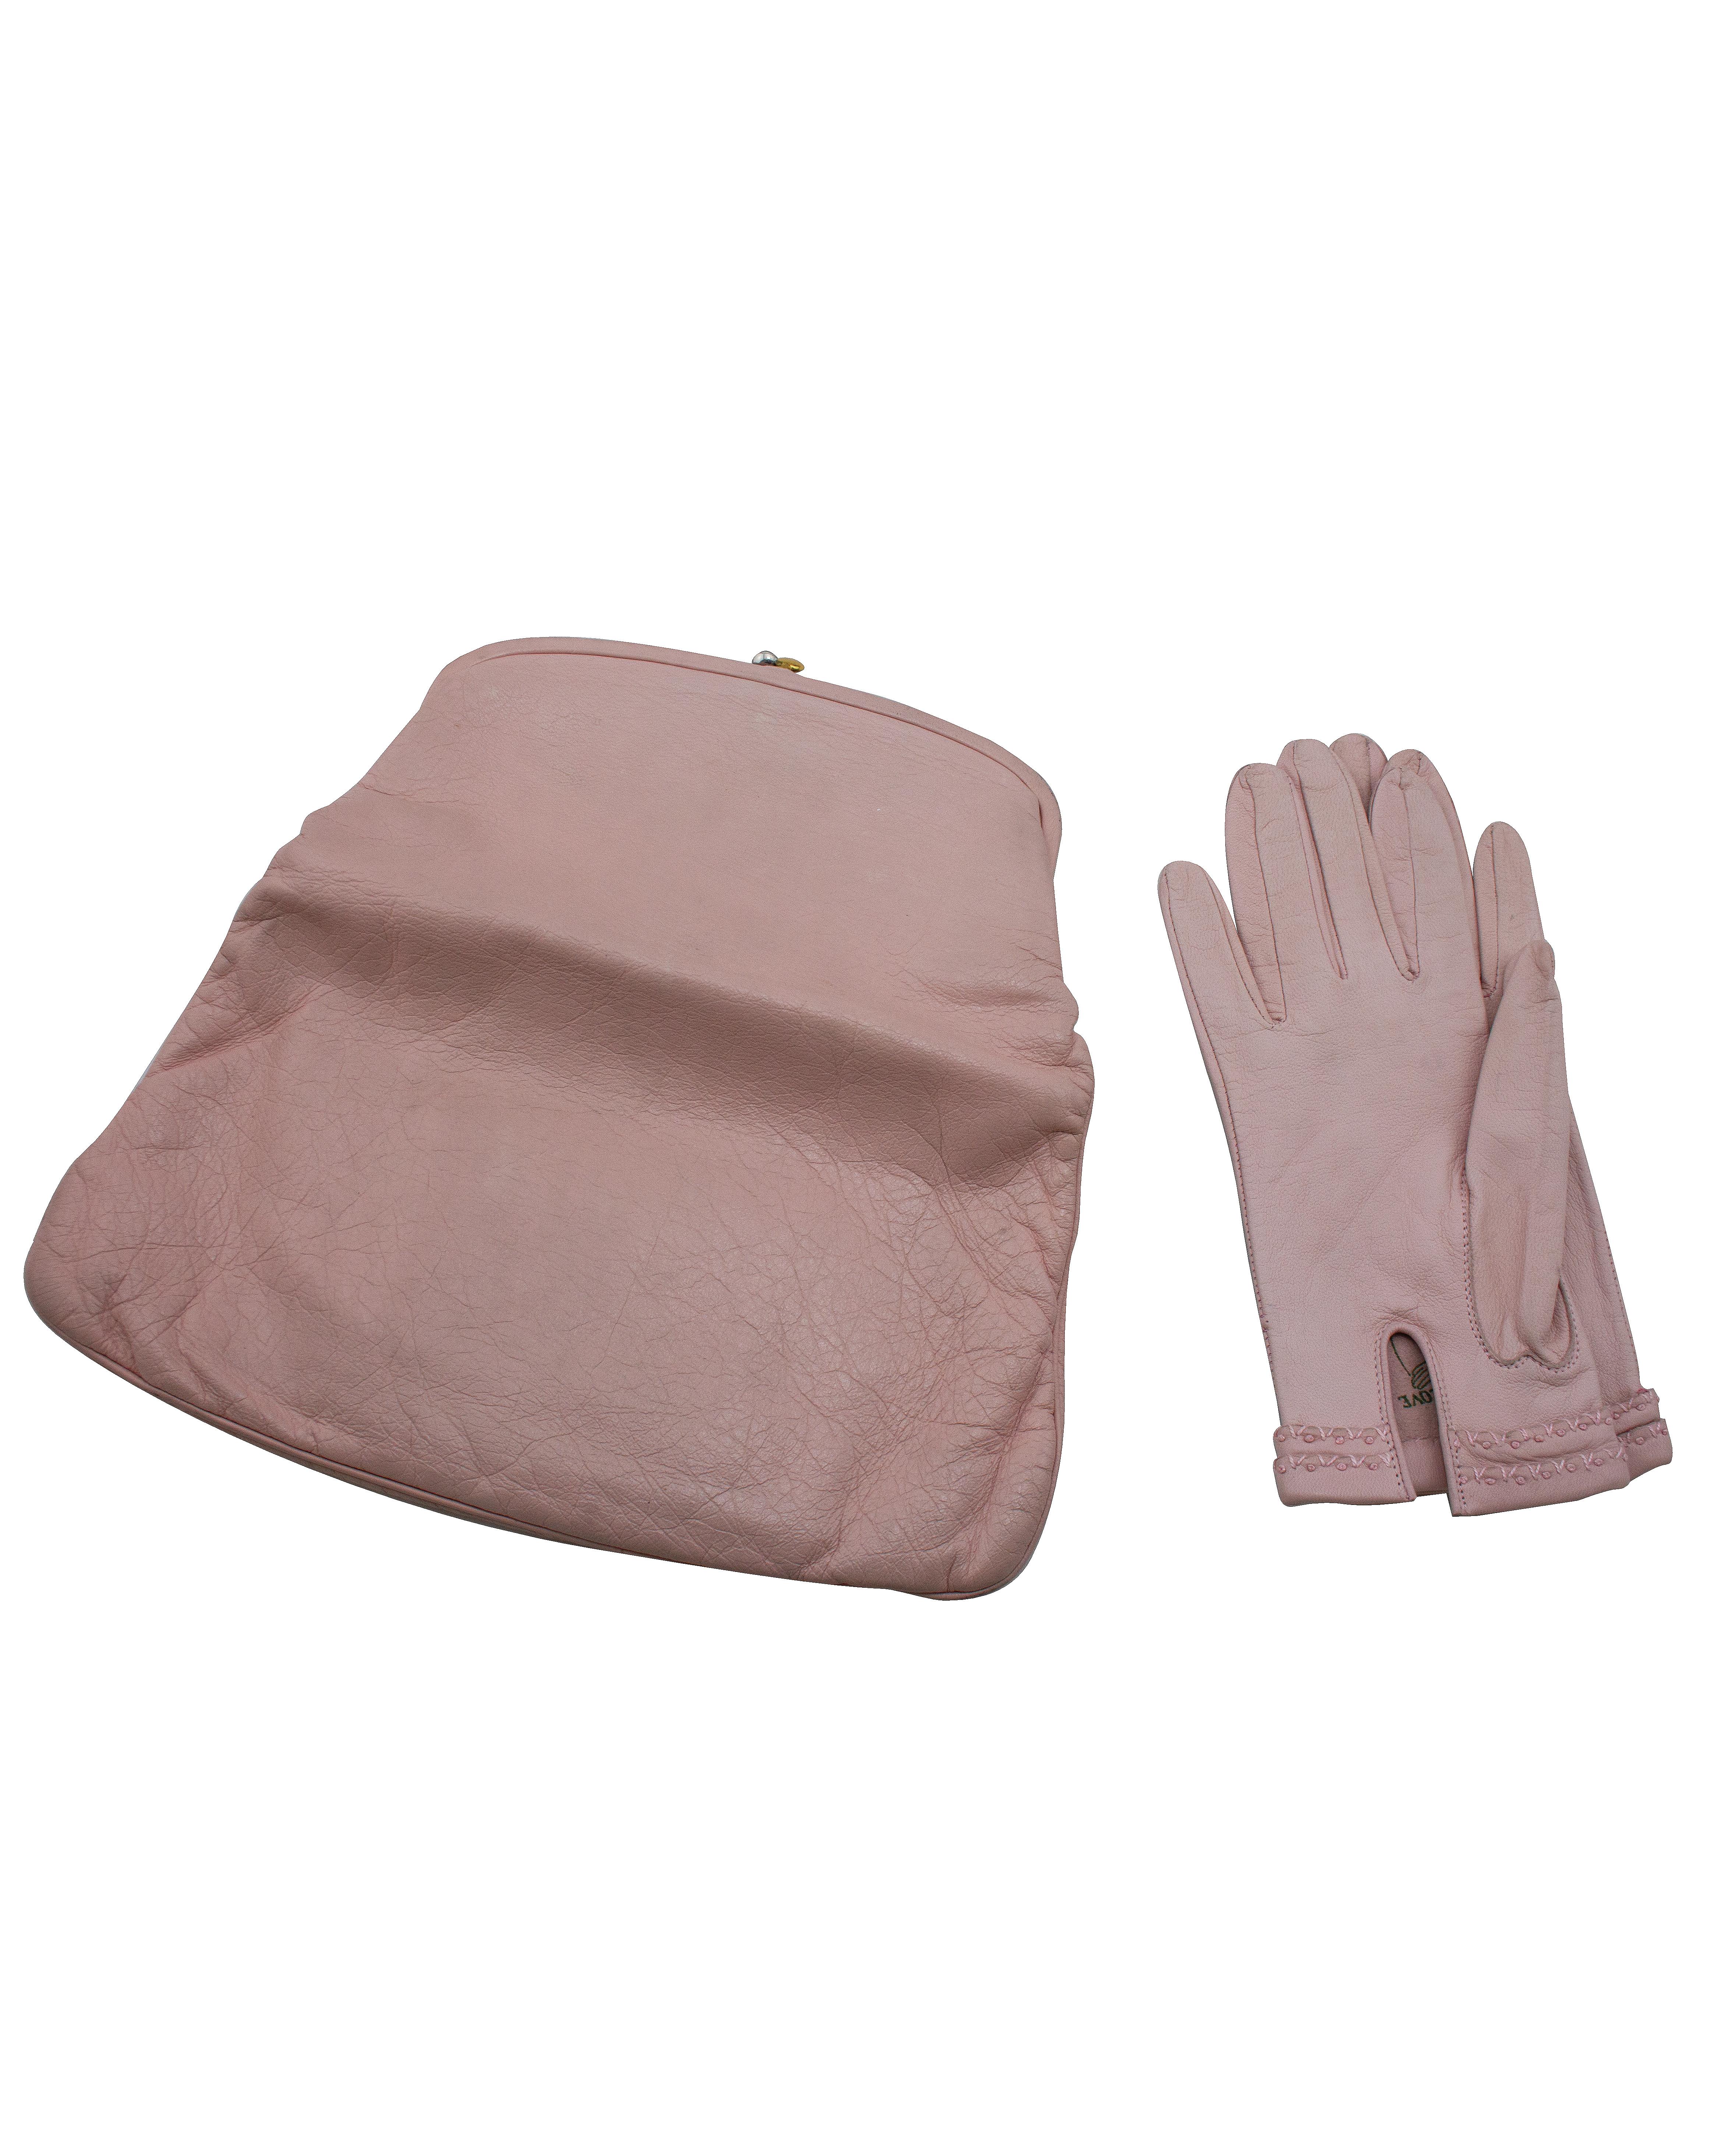 Pochette classique en cuir de chevreau rose pastel des années 1950 de Coblentz avec gants en cuir rose assortis. Rarement disponible en cuir, ce modèle classique est doublé de soie cordée marine et se ferme à l'aide d'une serrure à baiser en métal